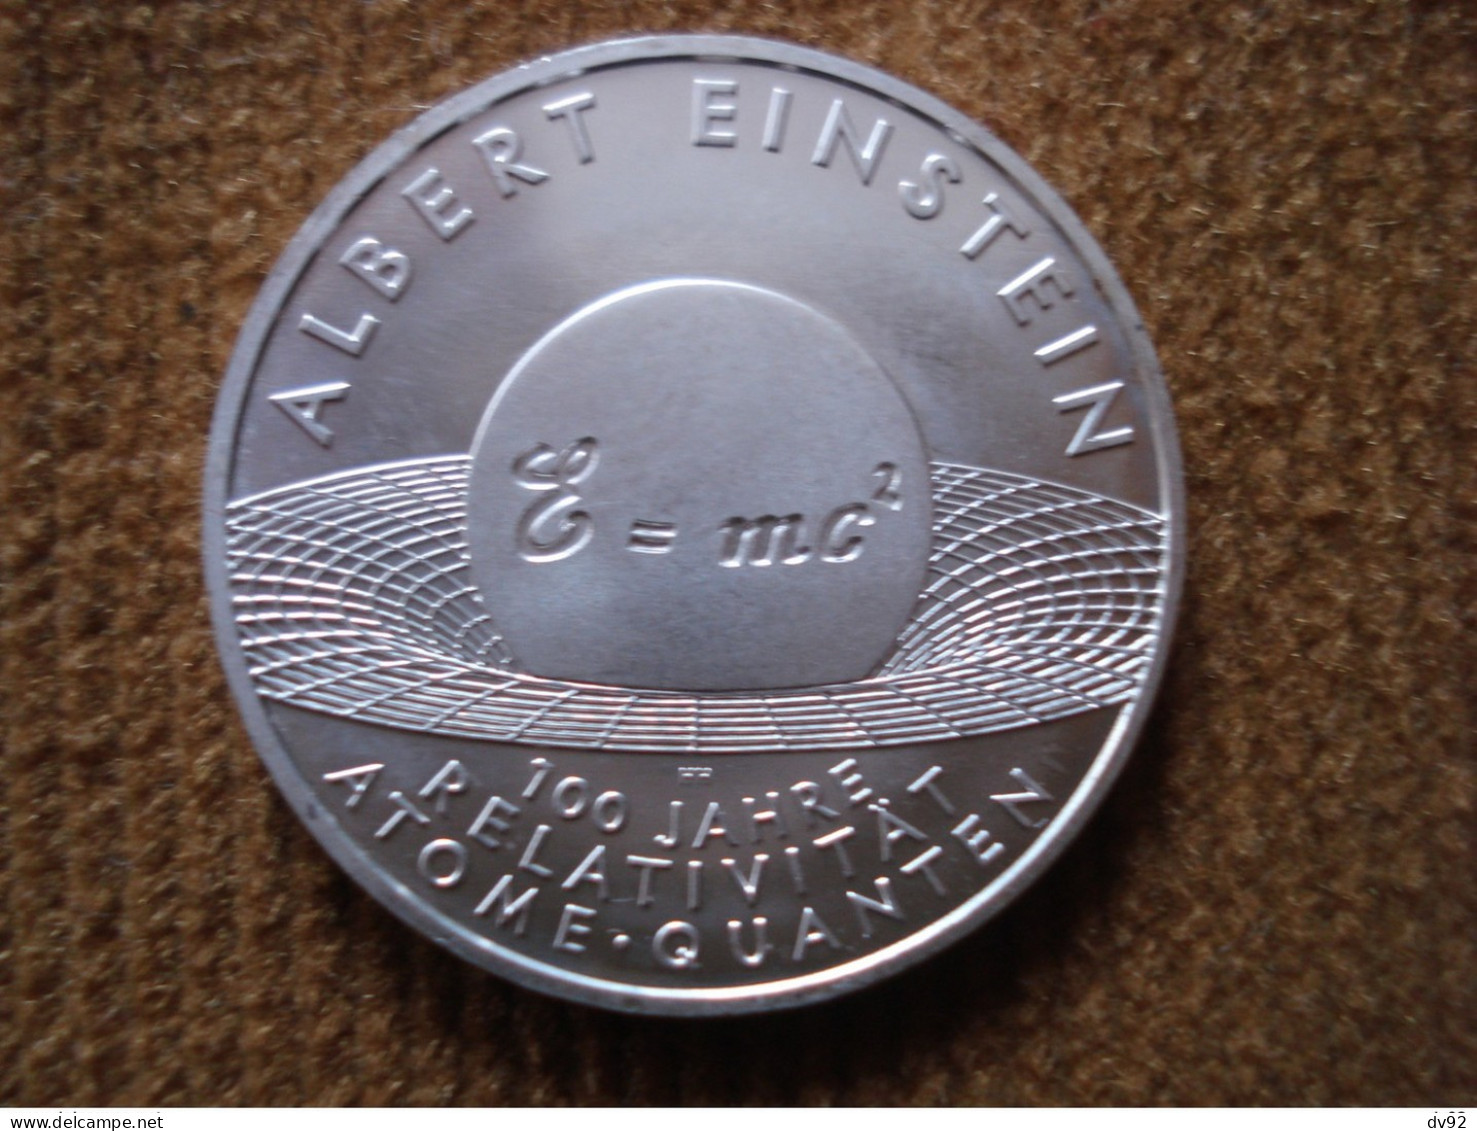 ALLEMAGNE 10 EUROS ALBERT EINSTEIN - Gedenkmünzen